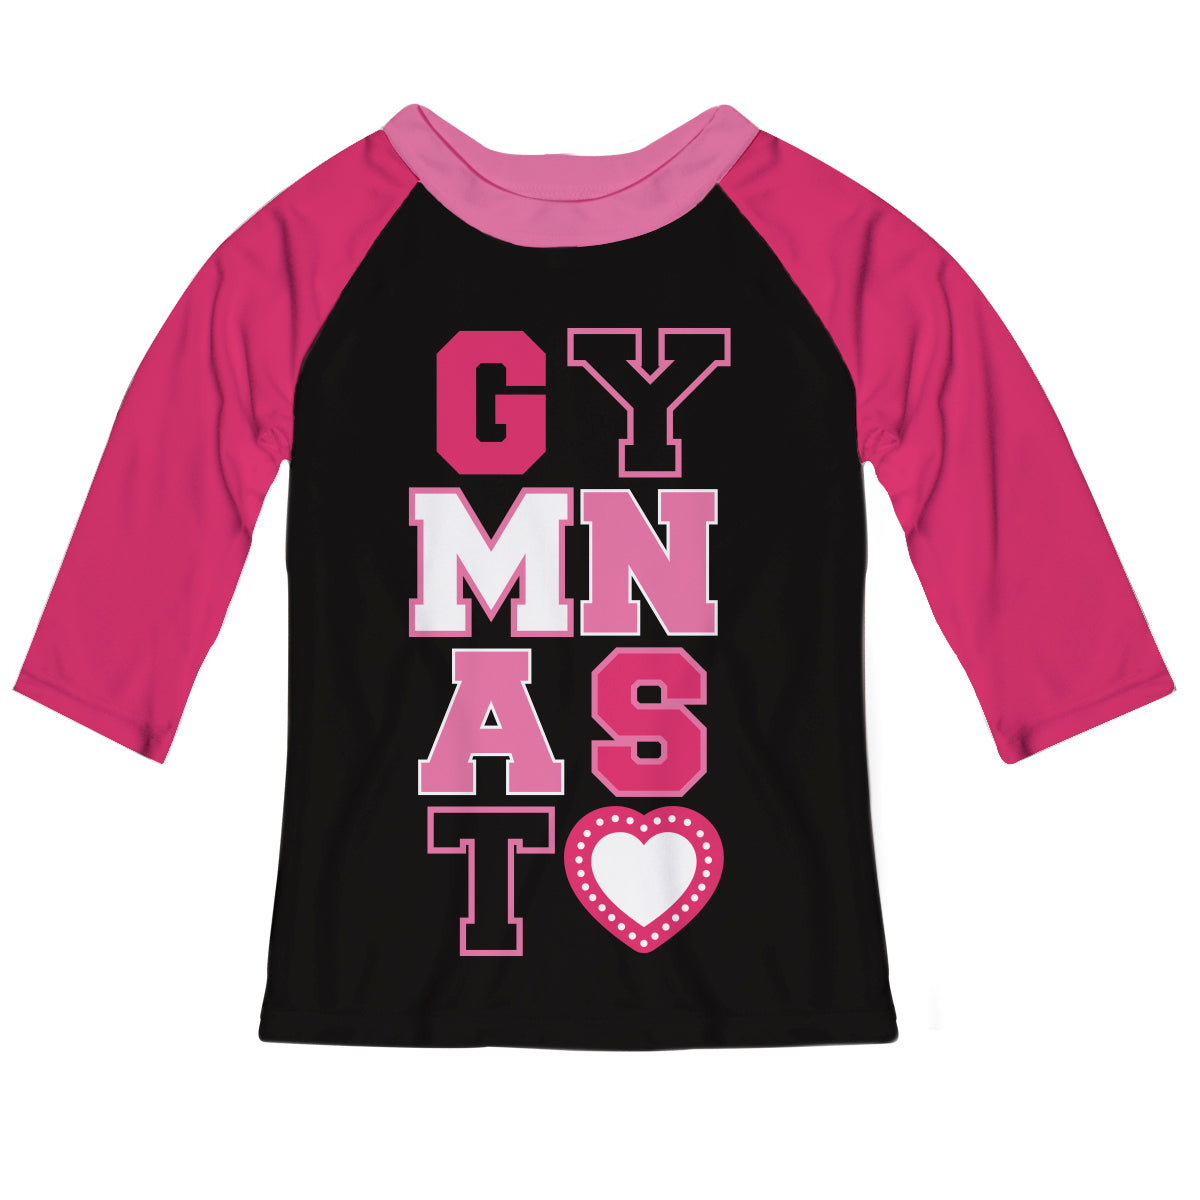 Gymnast Black and Hot Pink Raglan Tee Shirt 3/4 Sleeve